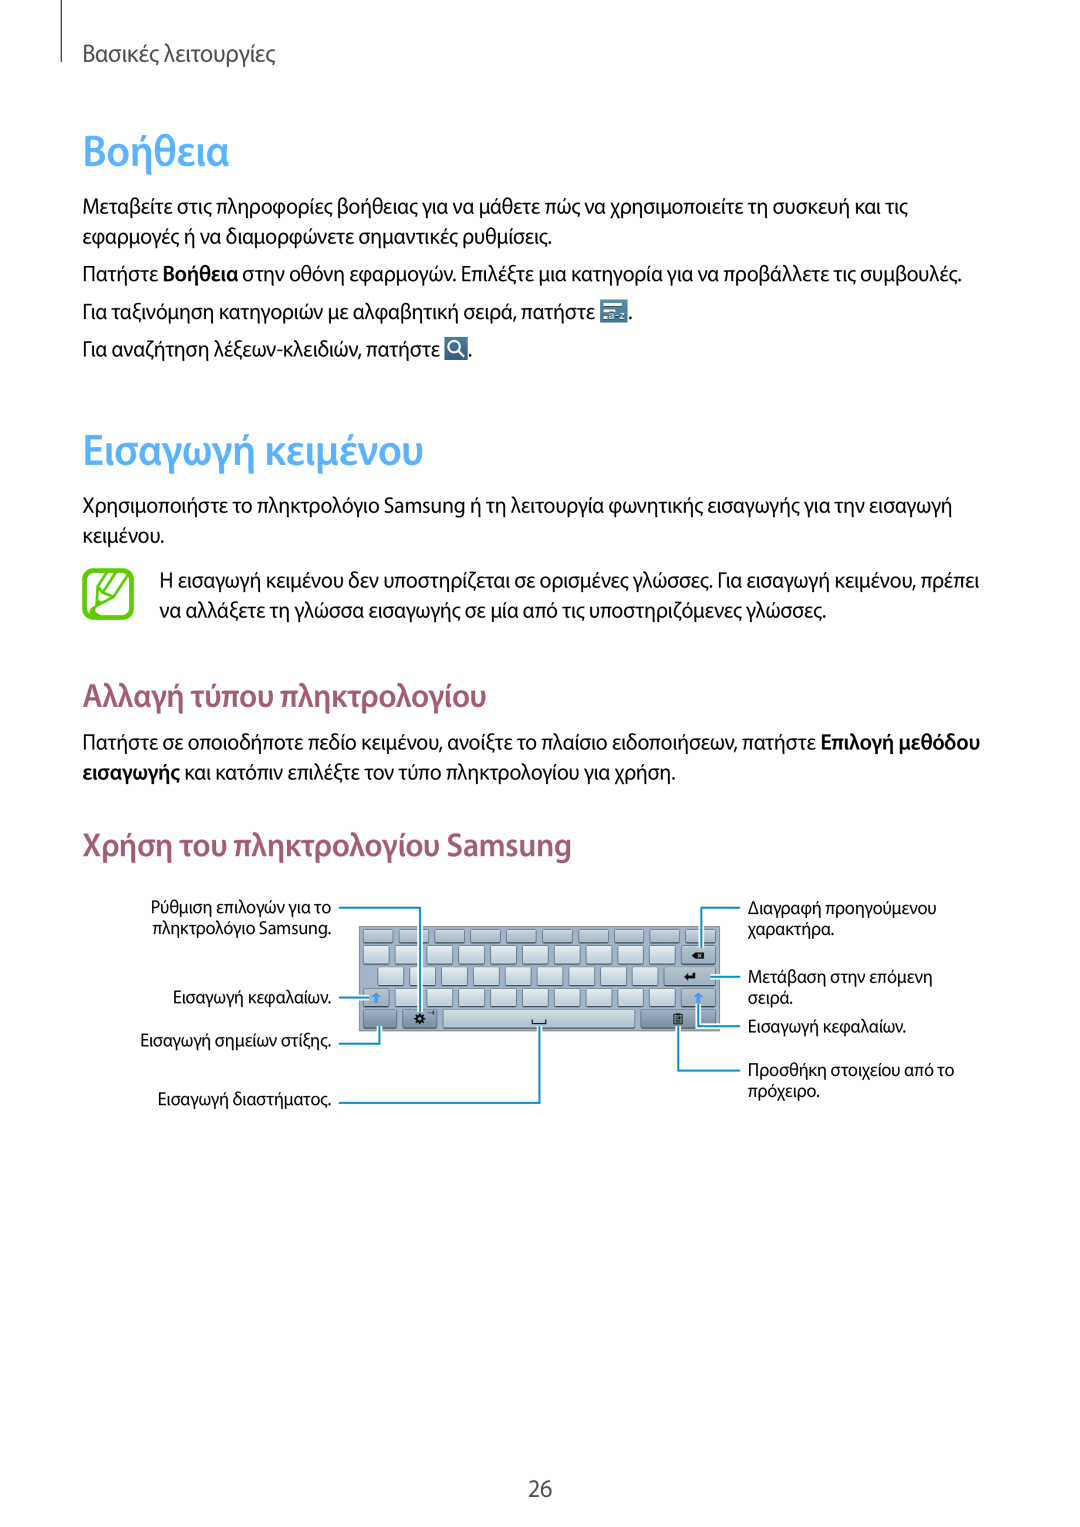 Samsung GT-P5210MKAEUR manual Βοήθεια, Εισαγωγή κειμένου, Αλλαγή τύπου πληκτρολογίου, Χρήση του πληκτρολογίου Samsung 